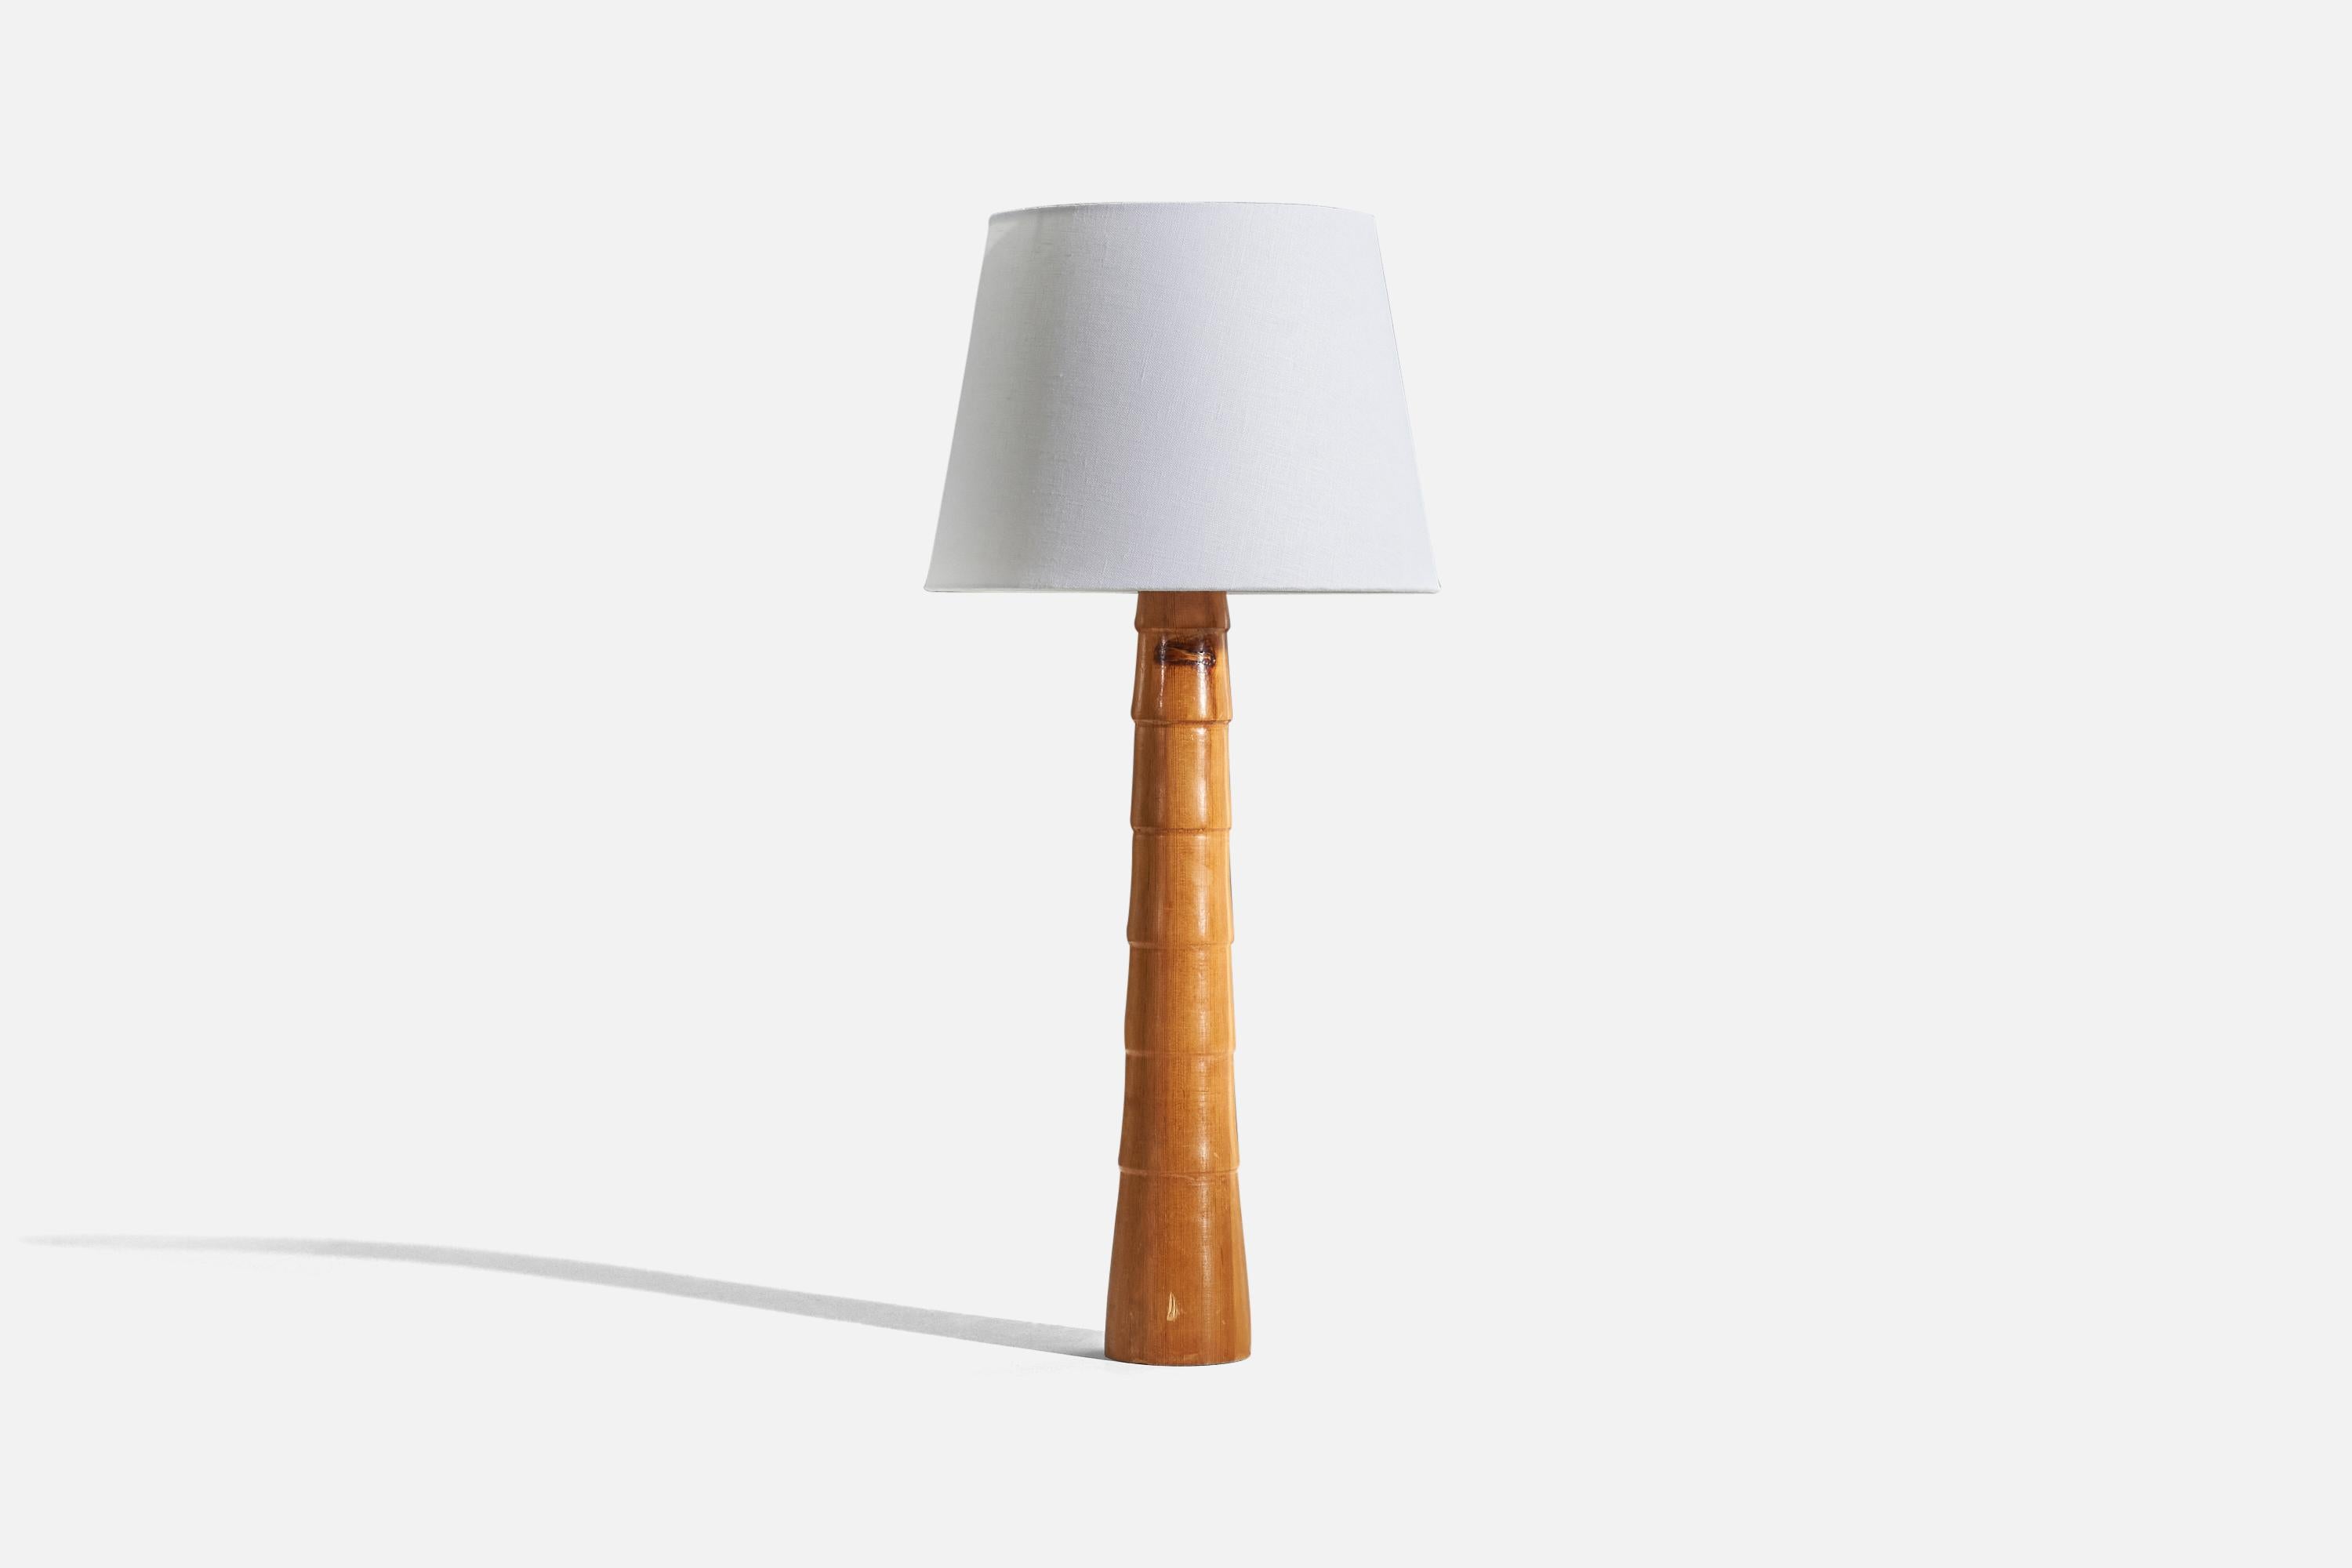 Une lampe de table en bois conçue et produite en Suède, vers les années 1960. 

Vendu sans abat-jour. 
Dimensions de la lampe (pouces) : 21,43 x 3,56 x 3,56 (H x L x P)
Dimensions de l'abat-jour (pouces) : 9 x 12 x 9 (T x B x S)
Dimension de la